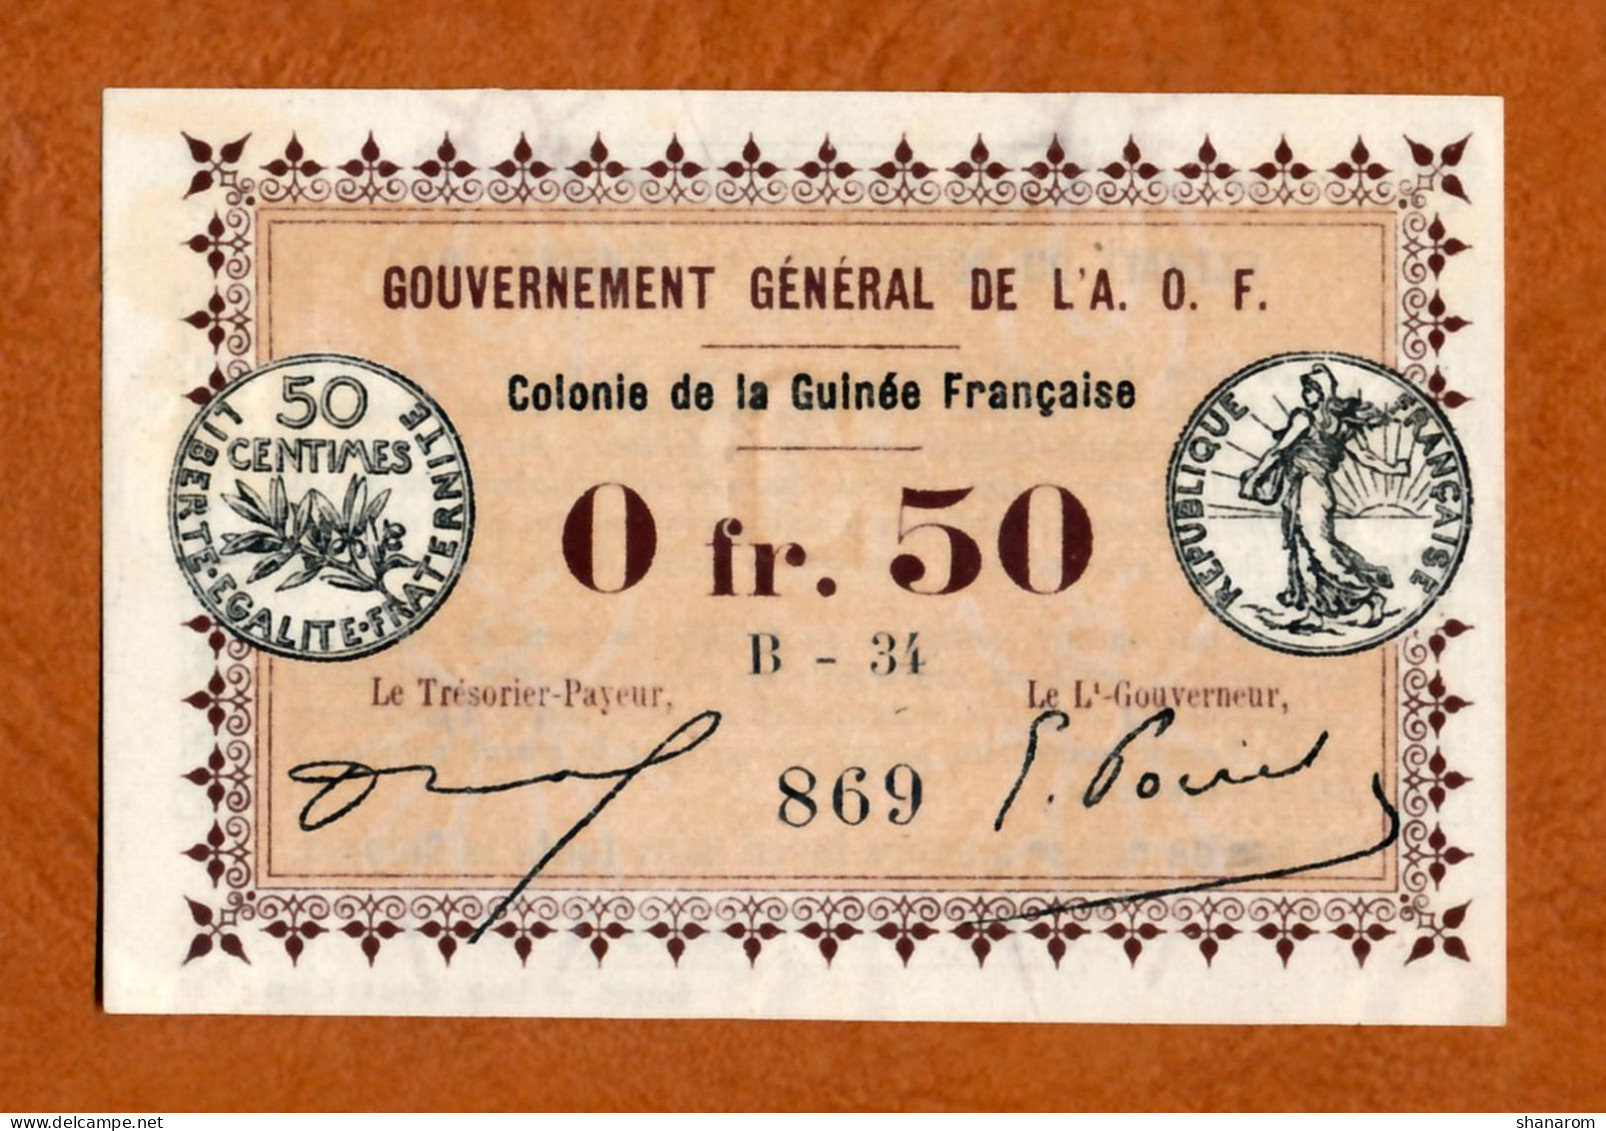 1917 // COLONIE DE LA GUINEE FRANCAISE // A.O.F. // Bon De Cinquante Centimes // Filigrane Abeilles // AU - SPL - Notgeld